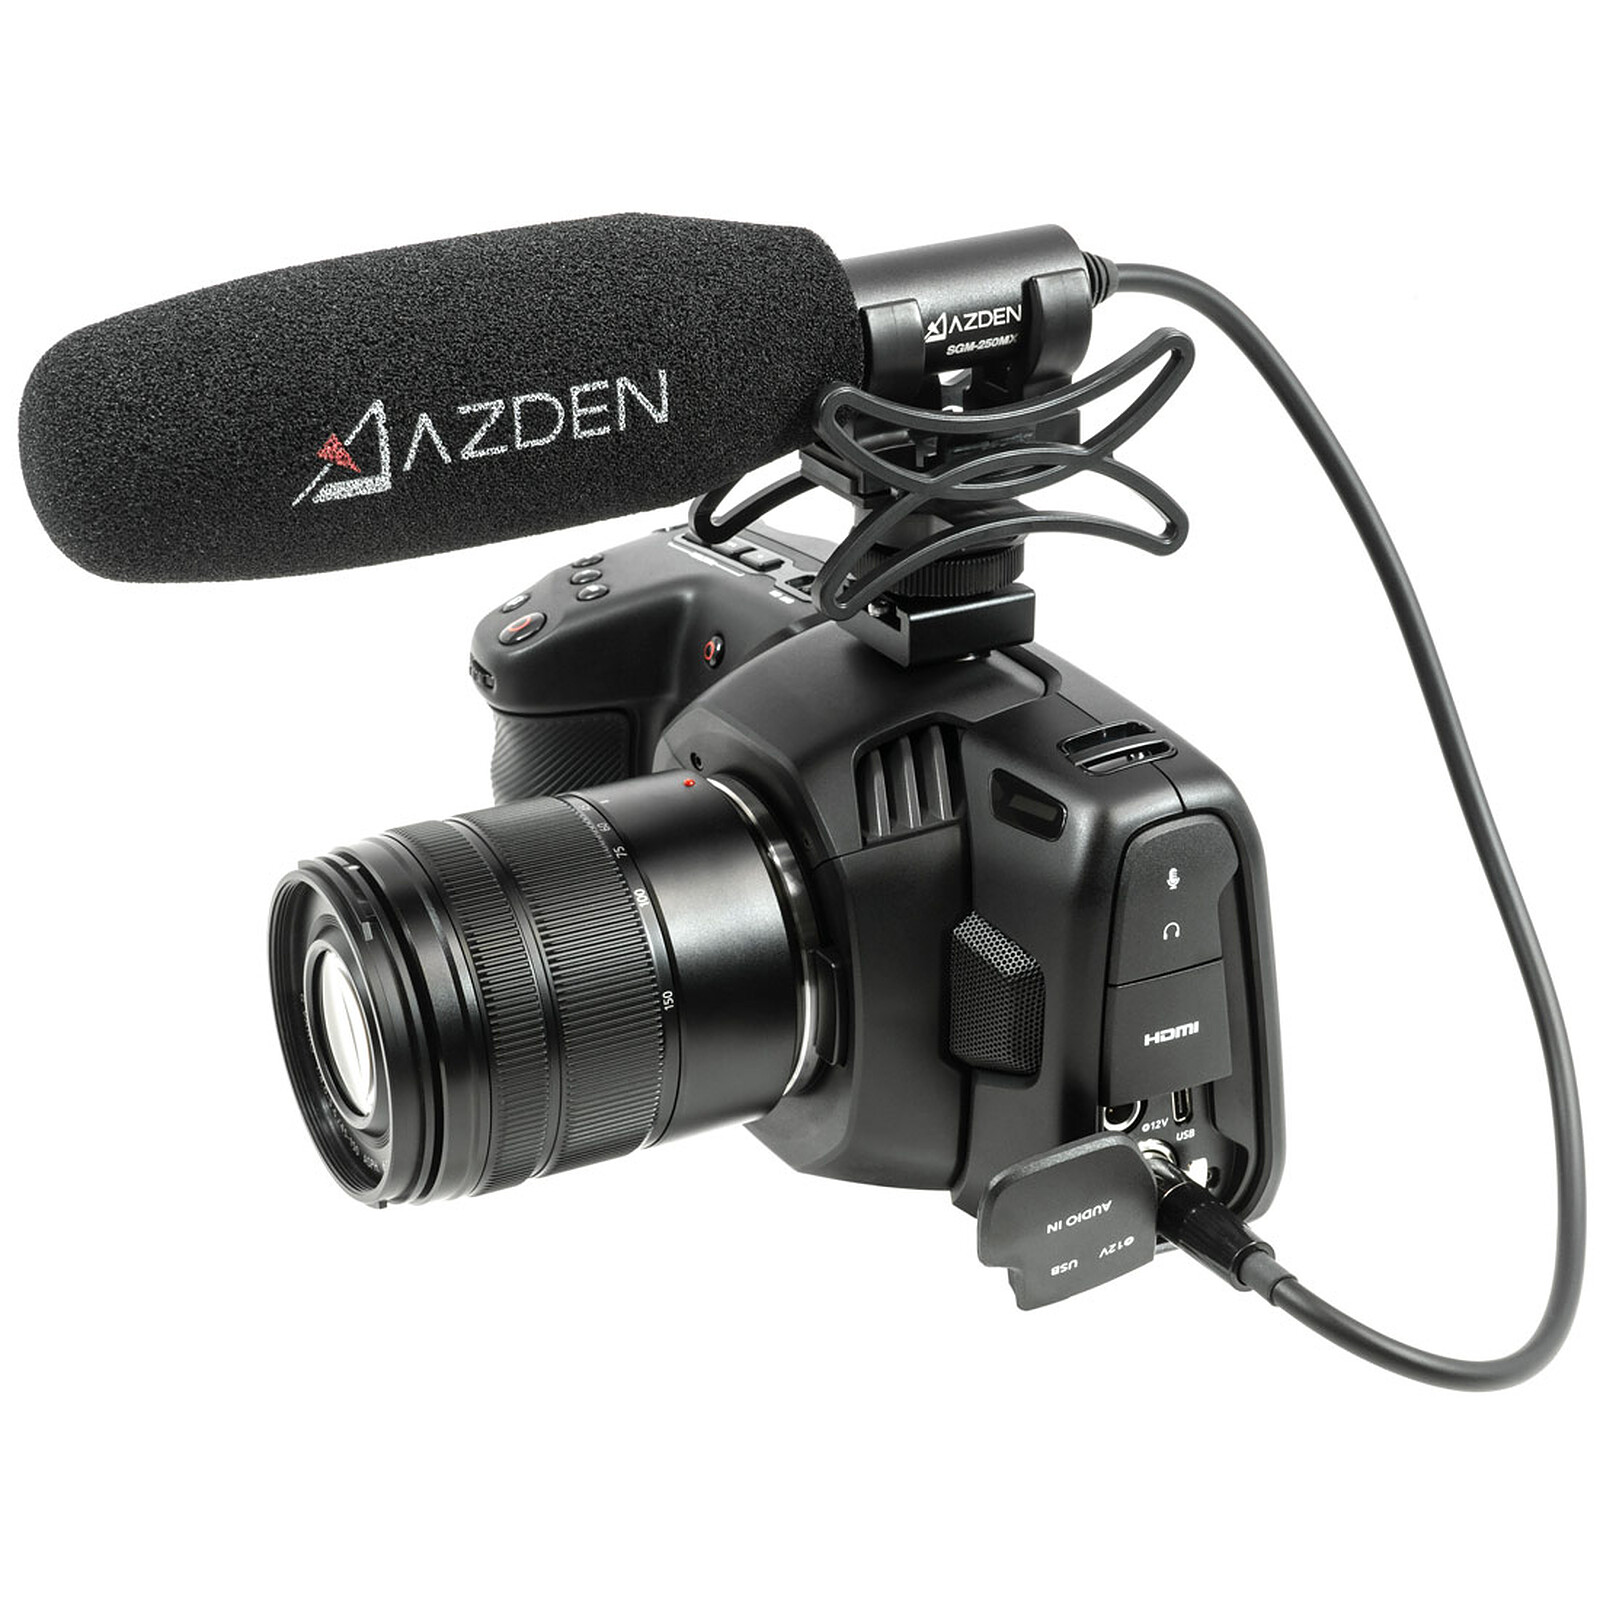 Azden SGM-250MX - Micro appareil photo - Garantie 3 ans LDLC